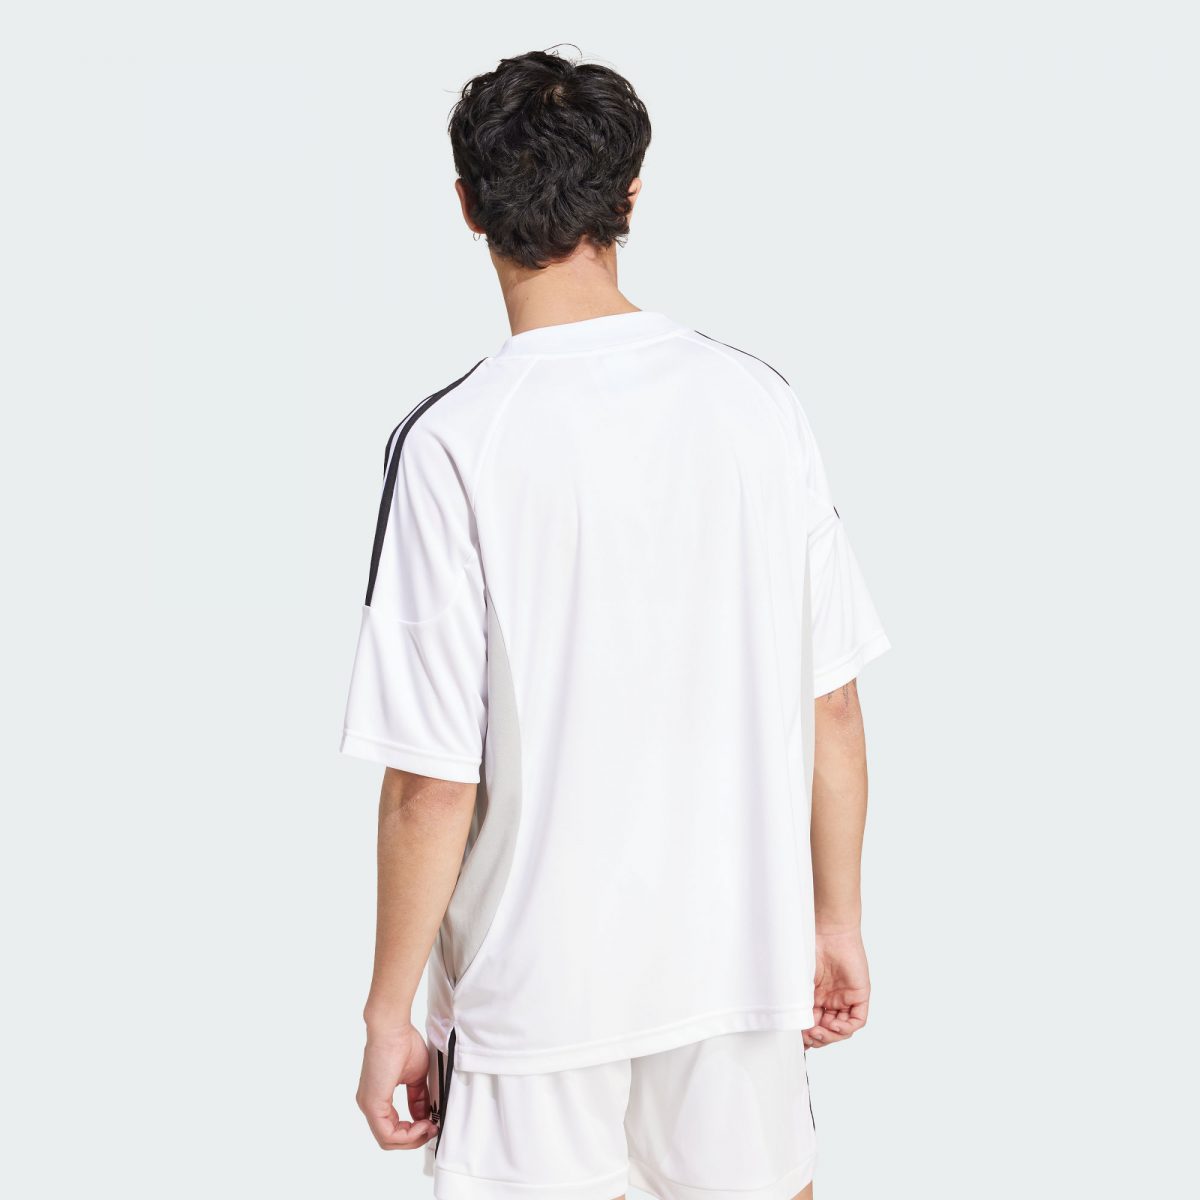 Мужская футболка adidas CLIMACOOL JERSEY белая фотография